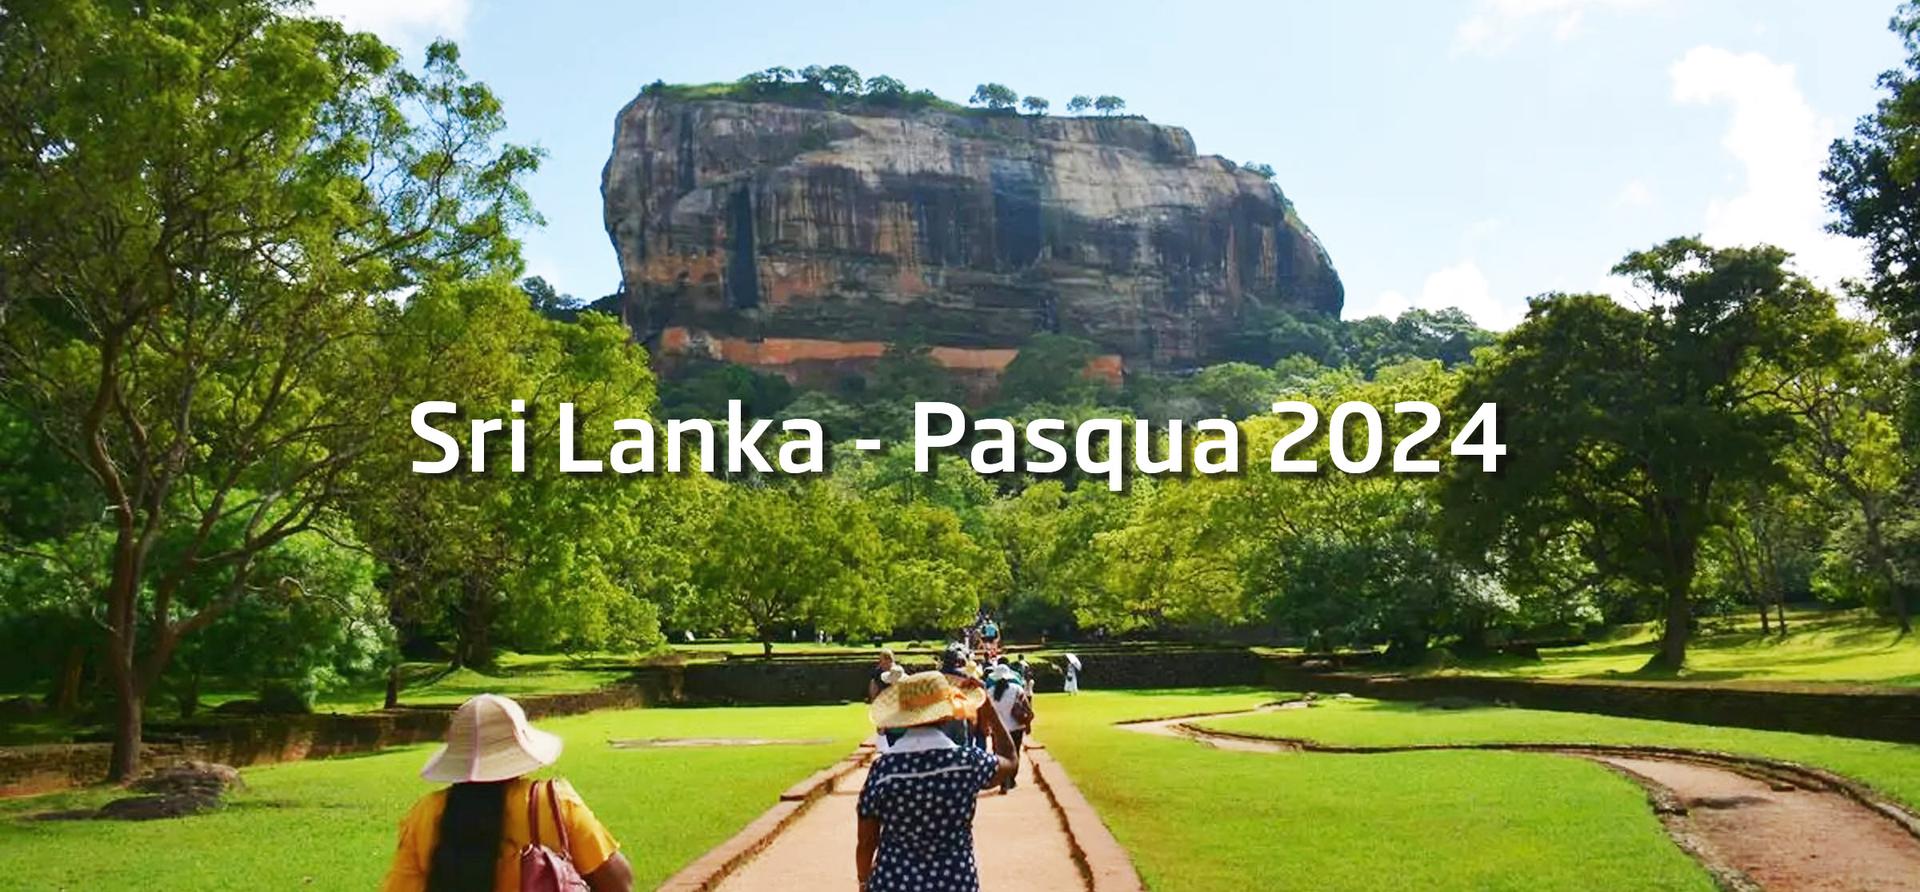 Sri Lanka - Pasqua 2024